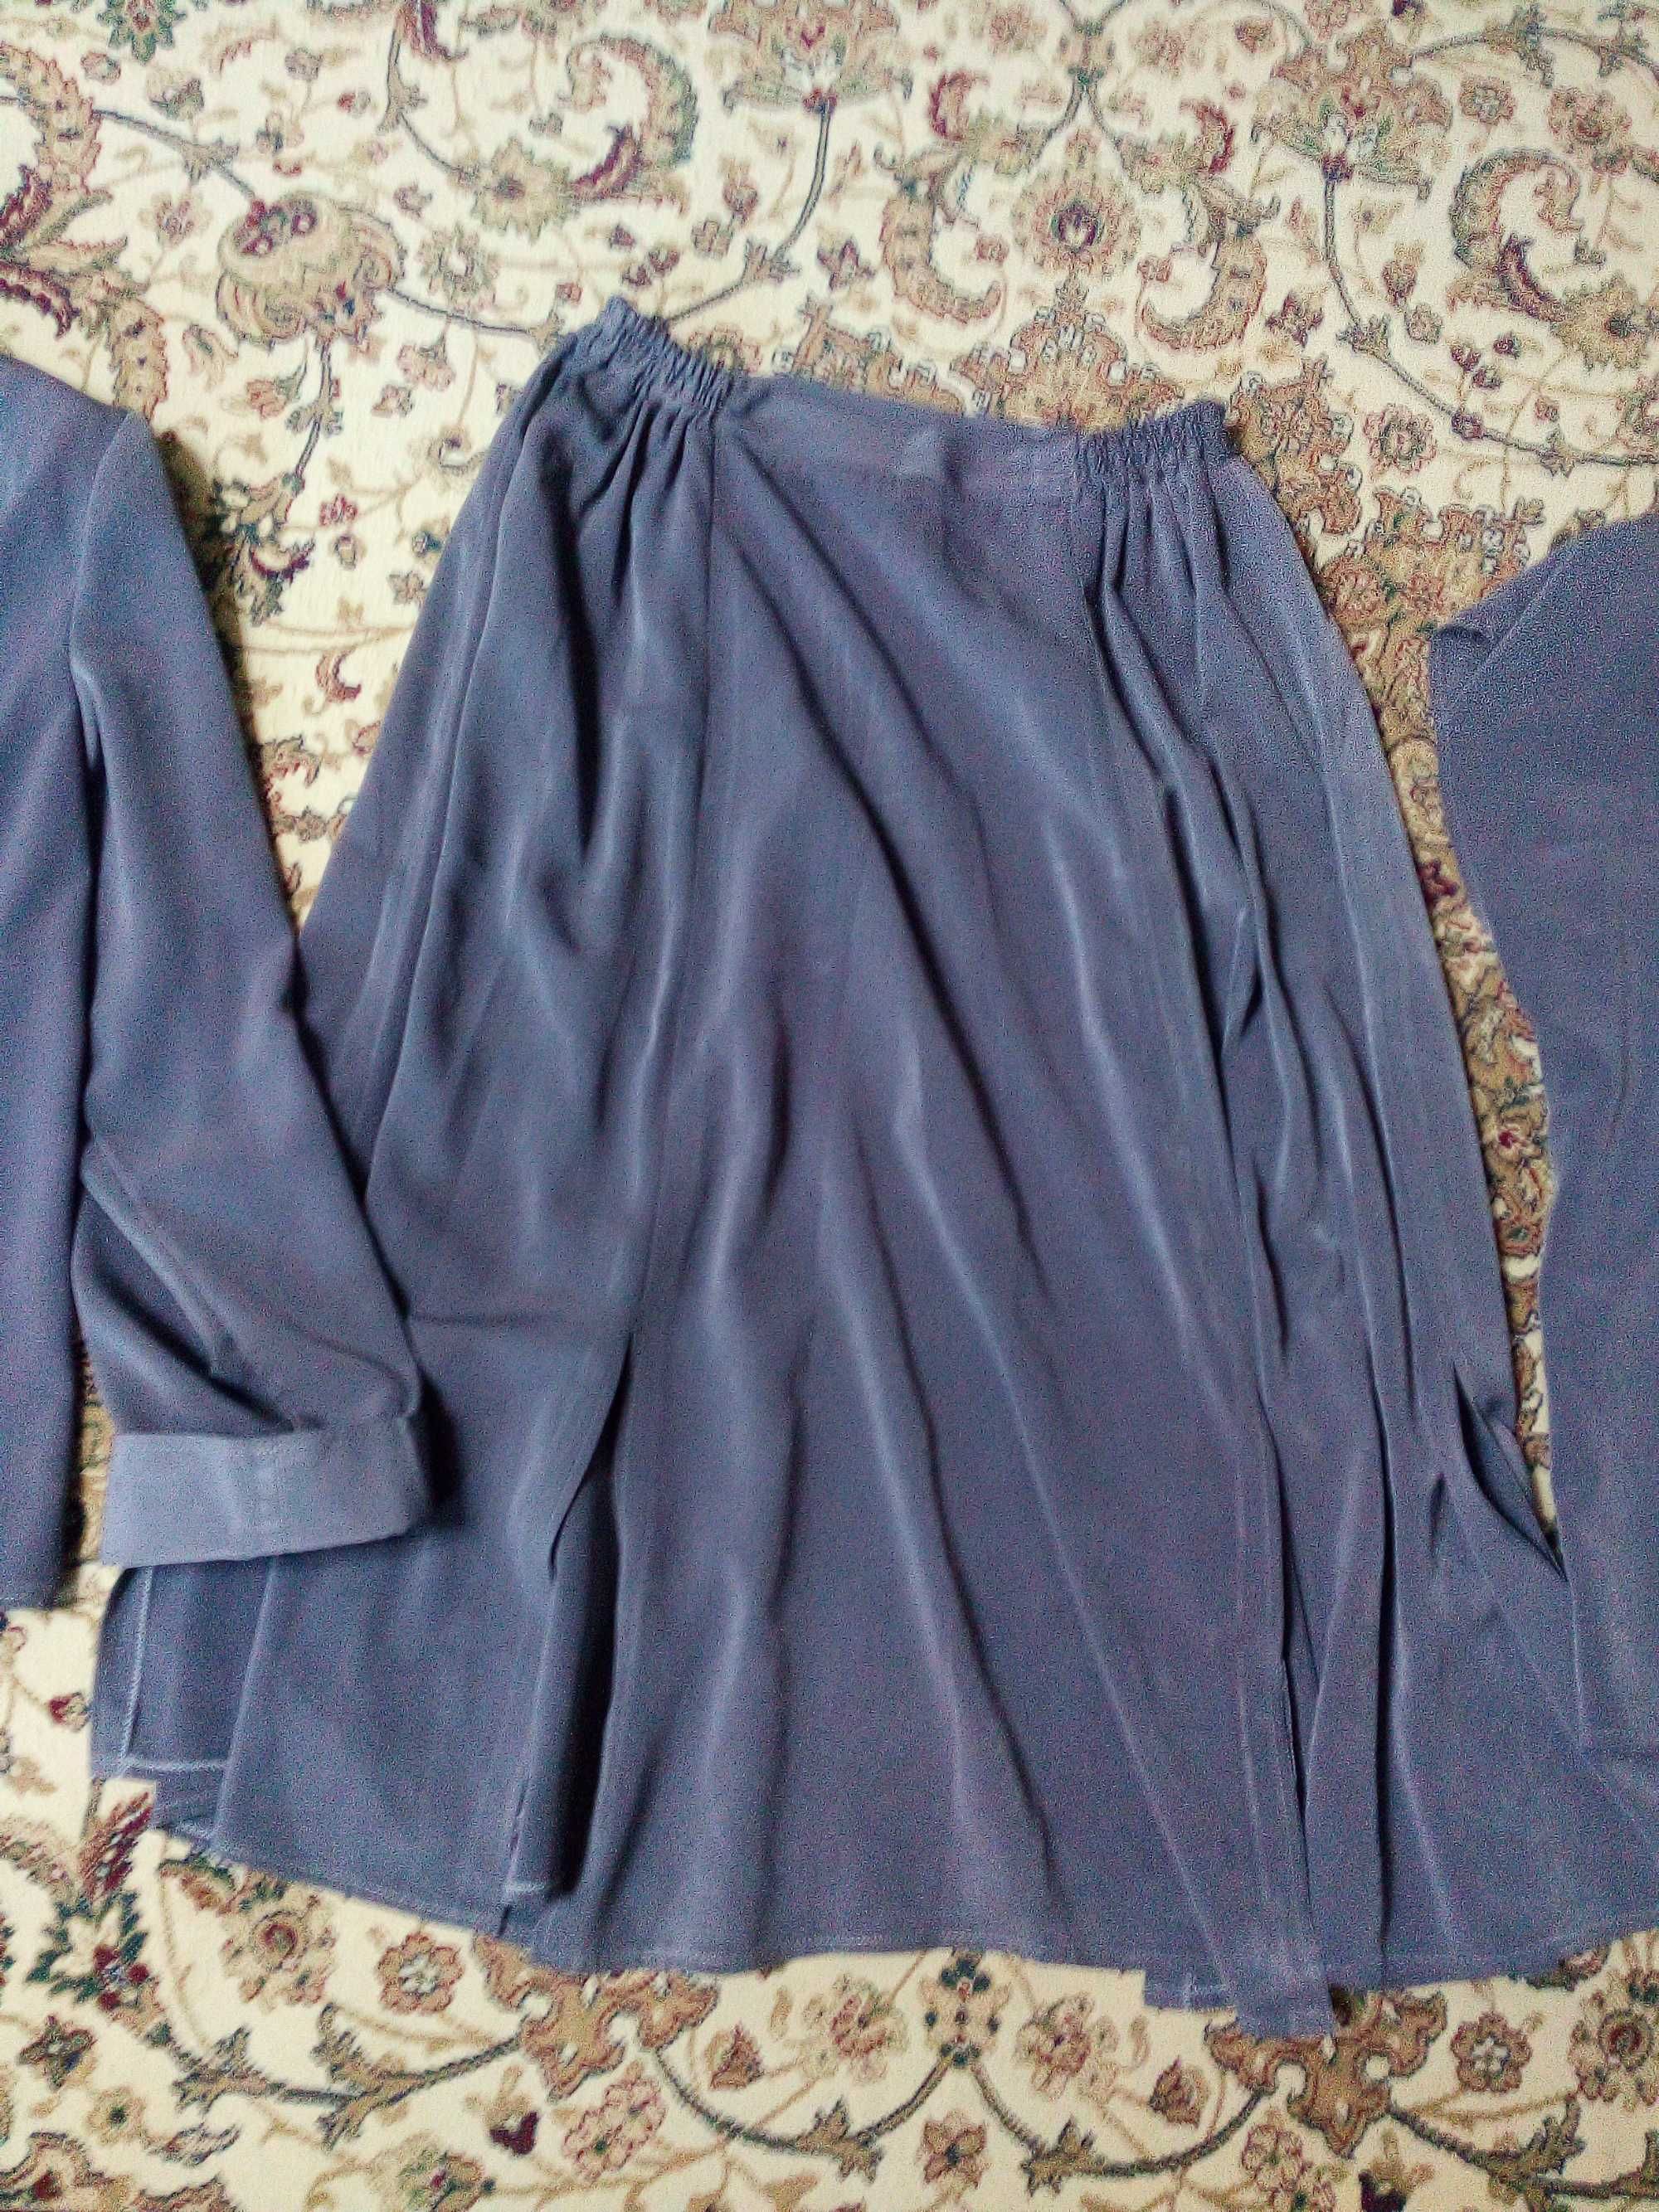 Женский шелковый костюм Б/У, размер 50-52..Цена 100 тыс